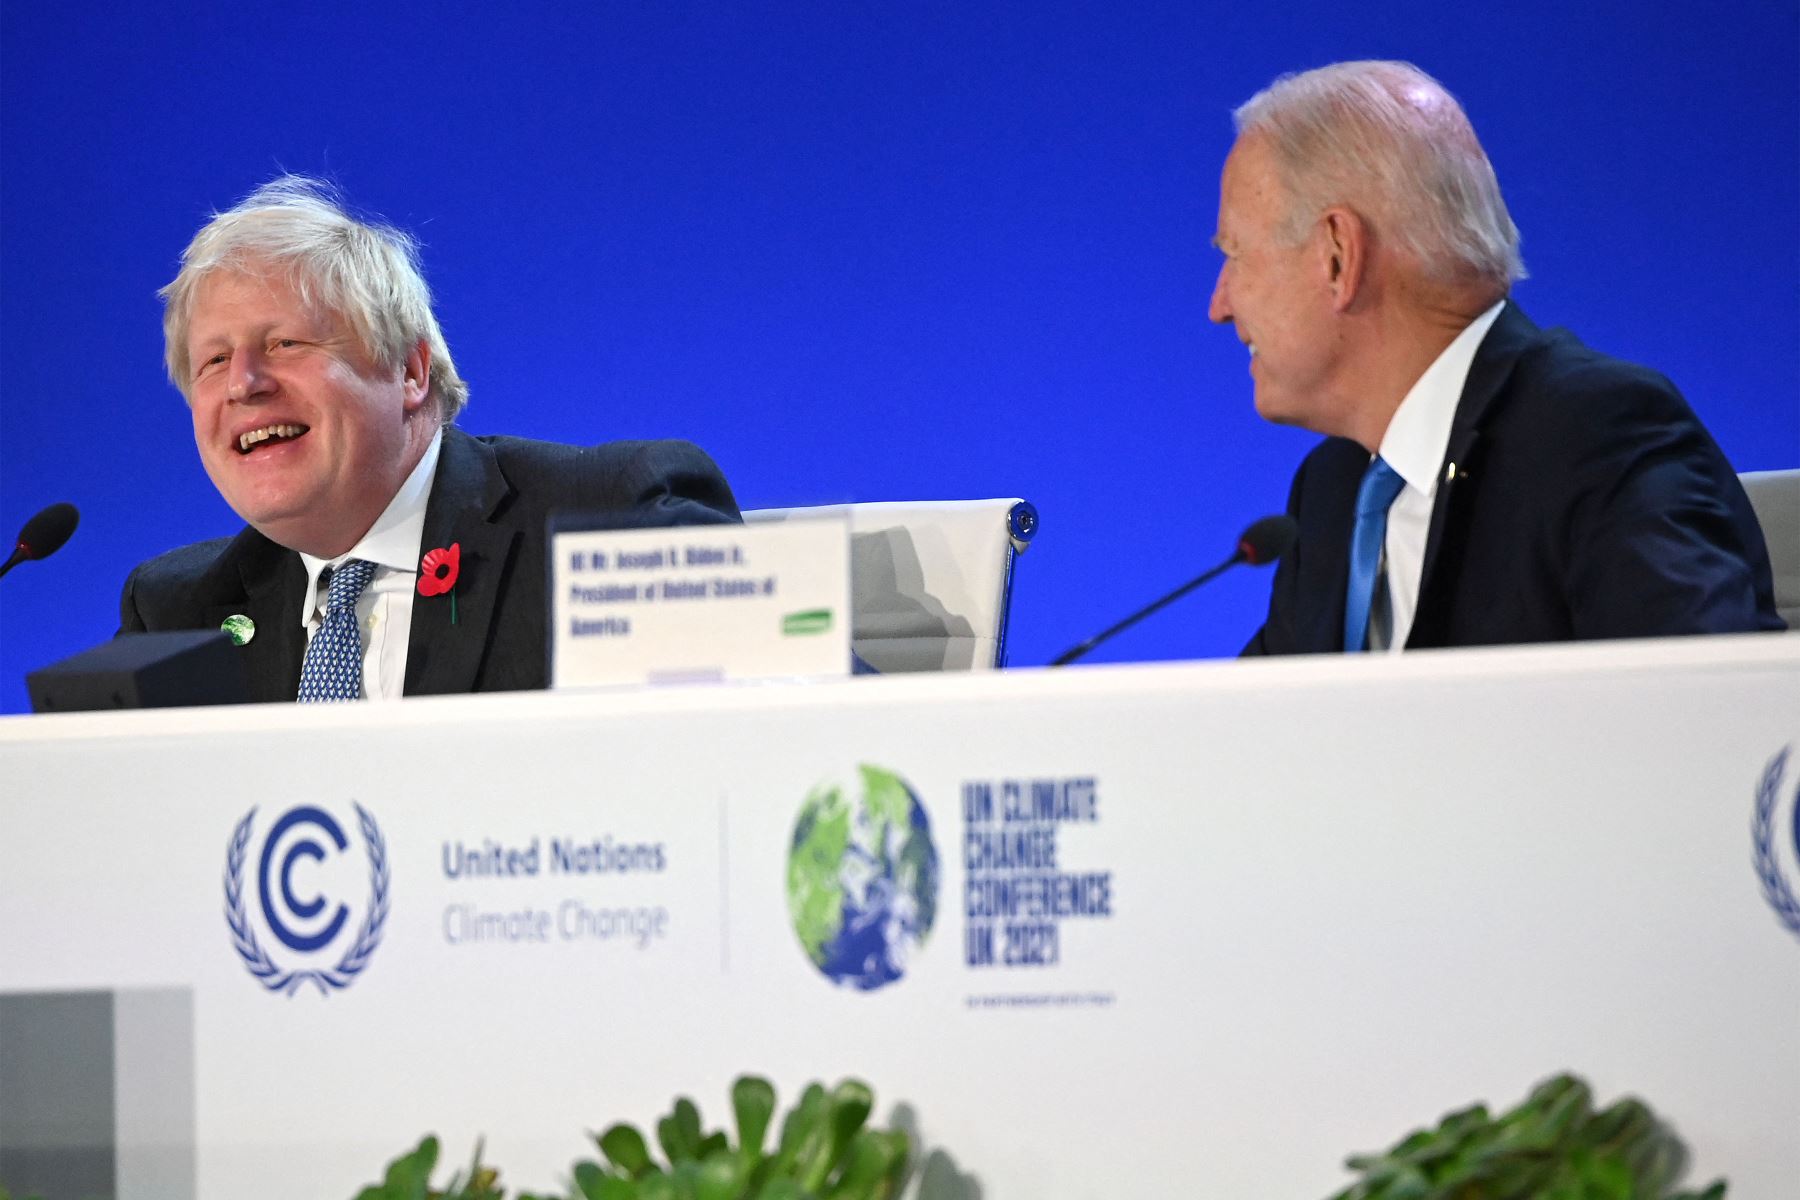 El primer ministro británico Boris Johnson y el presidente estadounidense Joe Biden hacen un gesto durante la sesión de la Cumbre Mundial de Líderes "Acelerando la innovación y el despliegue de tecnologías limpias" durante la Conferencia sobre el clima COP26 en el Scottish Event Campus en Glasgow, Escocia.
Foto: AFP